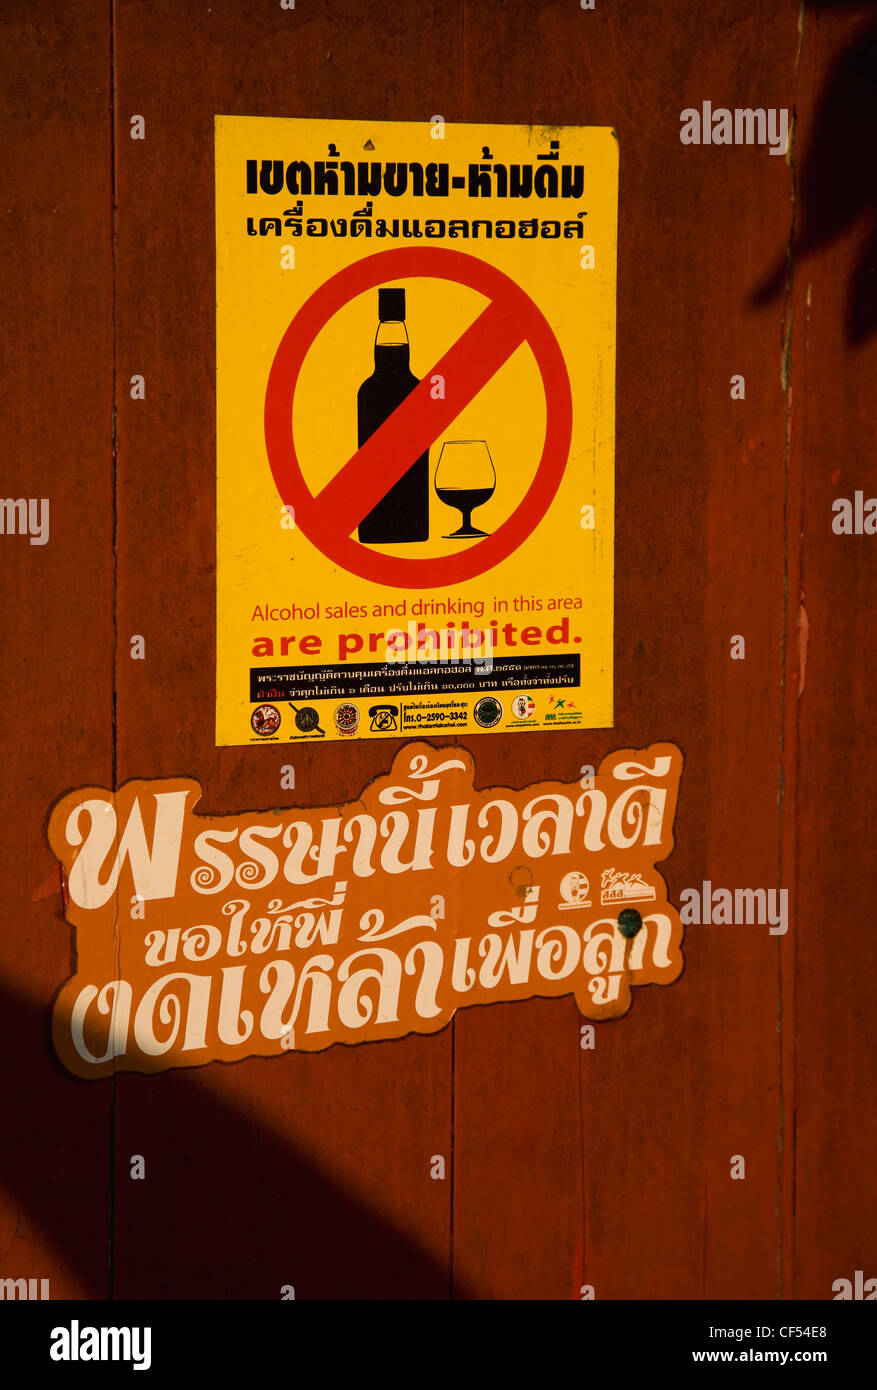 Sign in Thai interdisant l'alcool et les cigarettes à l'entrée du temple local Thaïlande Bangkok Thaïlande Asie Asie chinois thaïlandais Banque D'Images